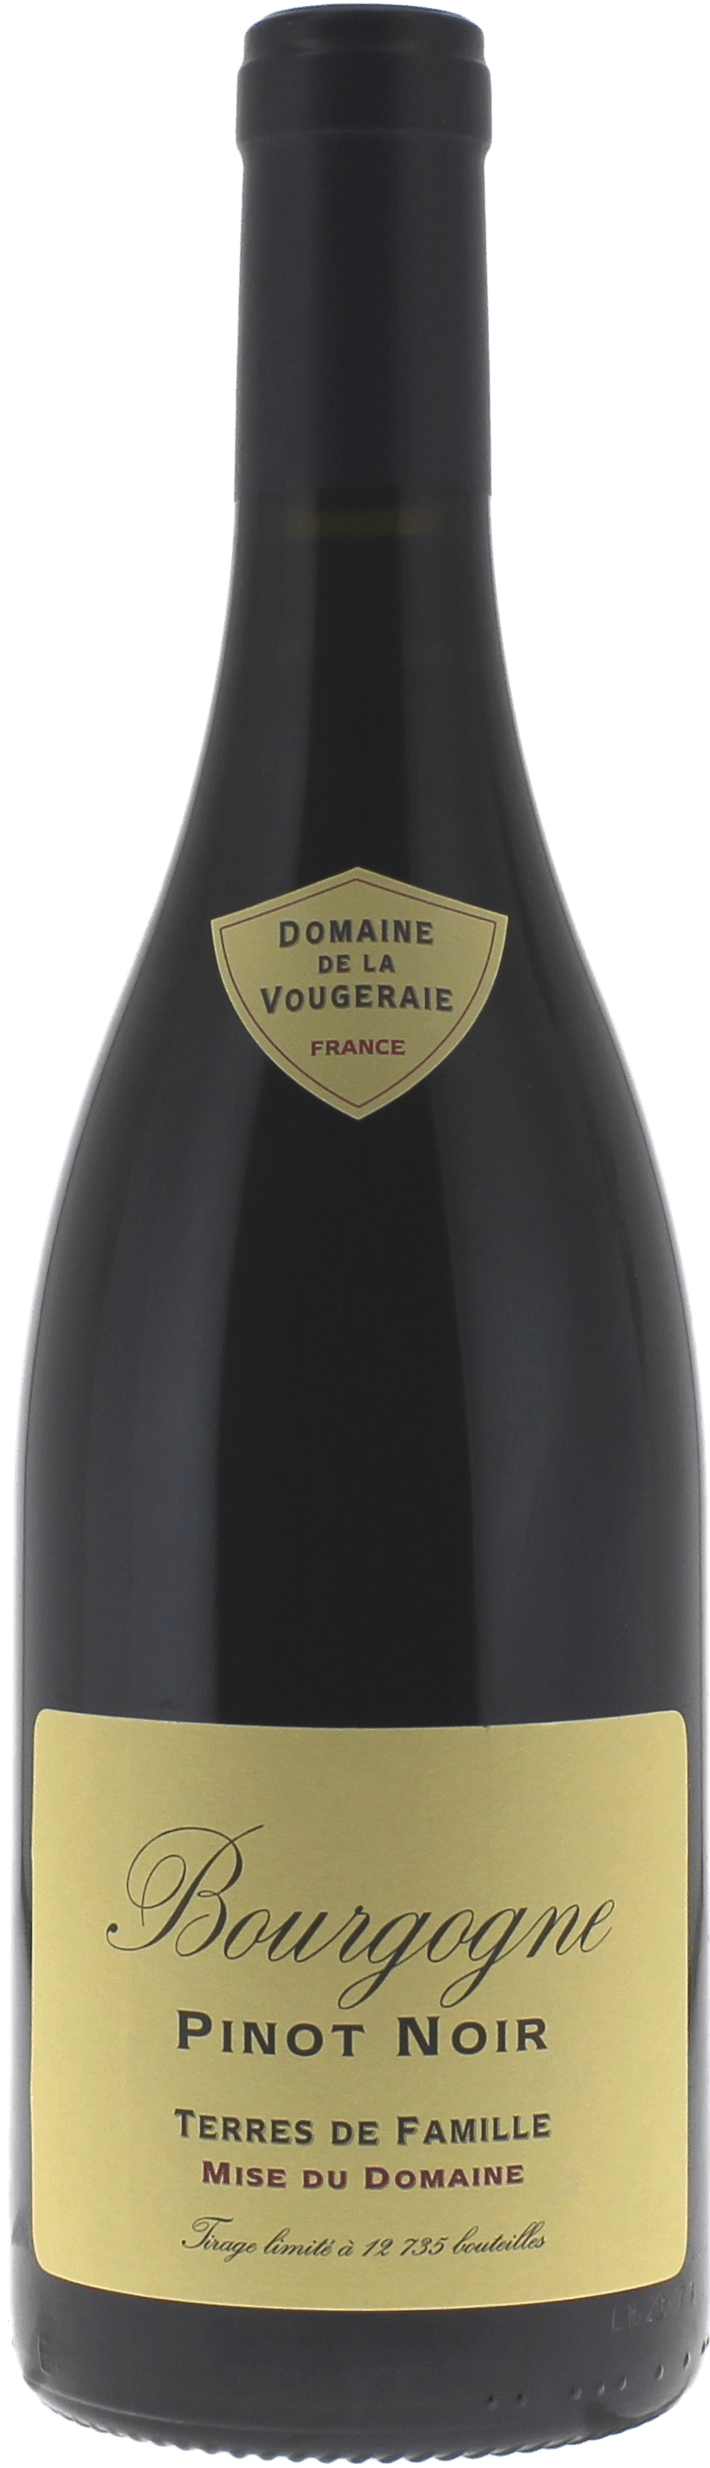 Pinot noir terres de famille 2017 Domaine VOUGERAIE, Bourgogne rouge